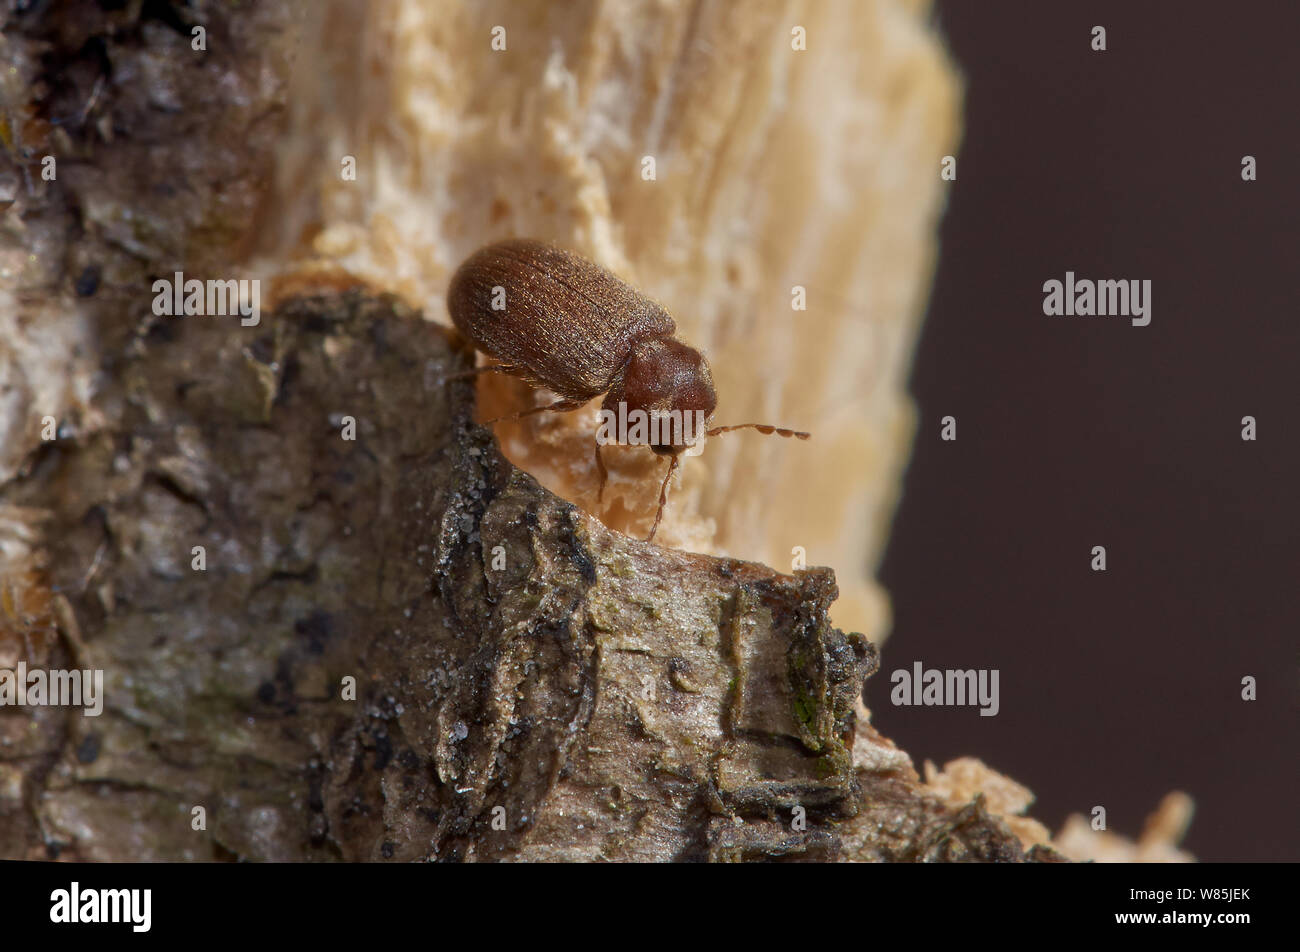 Woodworm / Furniture beetle (Anobium punctatum) feeding on wood, England, UK Stock Photo